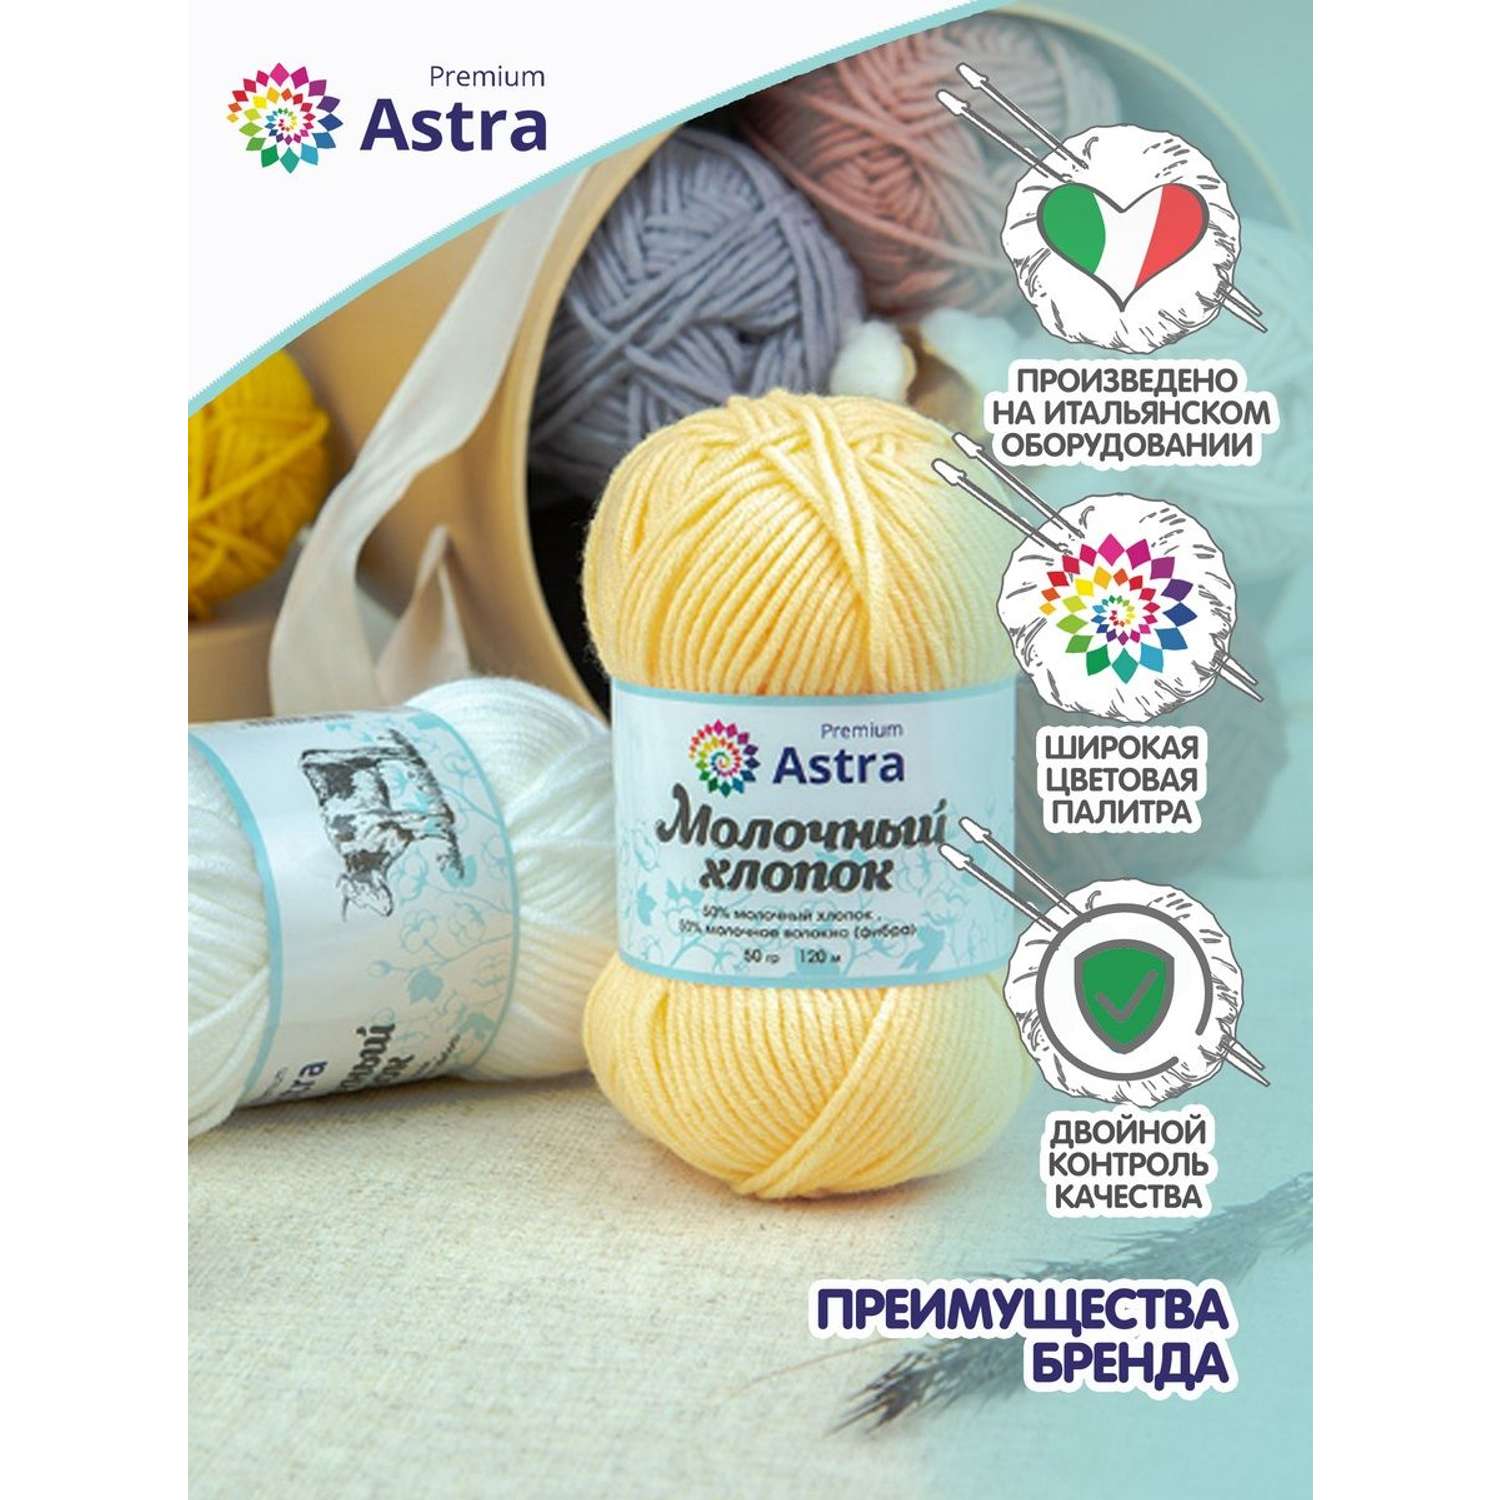 Пряжа для вязания Astra Premium milk cotton хлопок акрил 50 гр 100 м 15 серый 3 мотка - фото 3